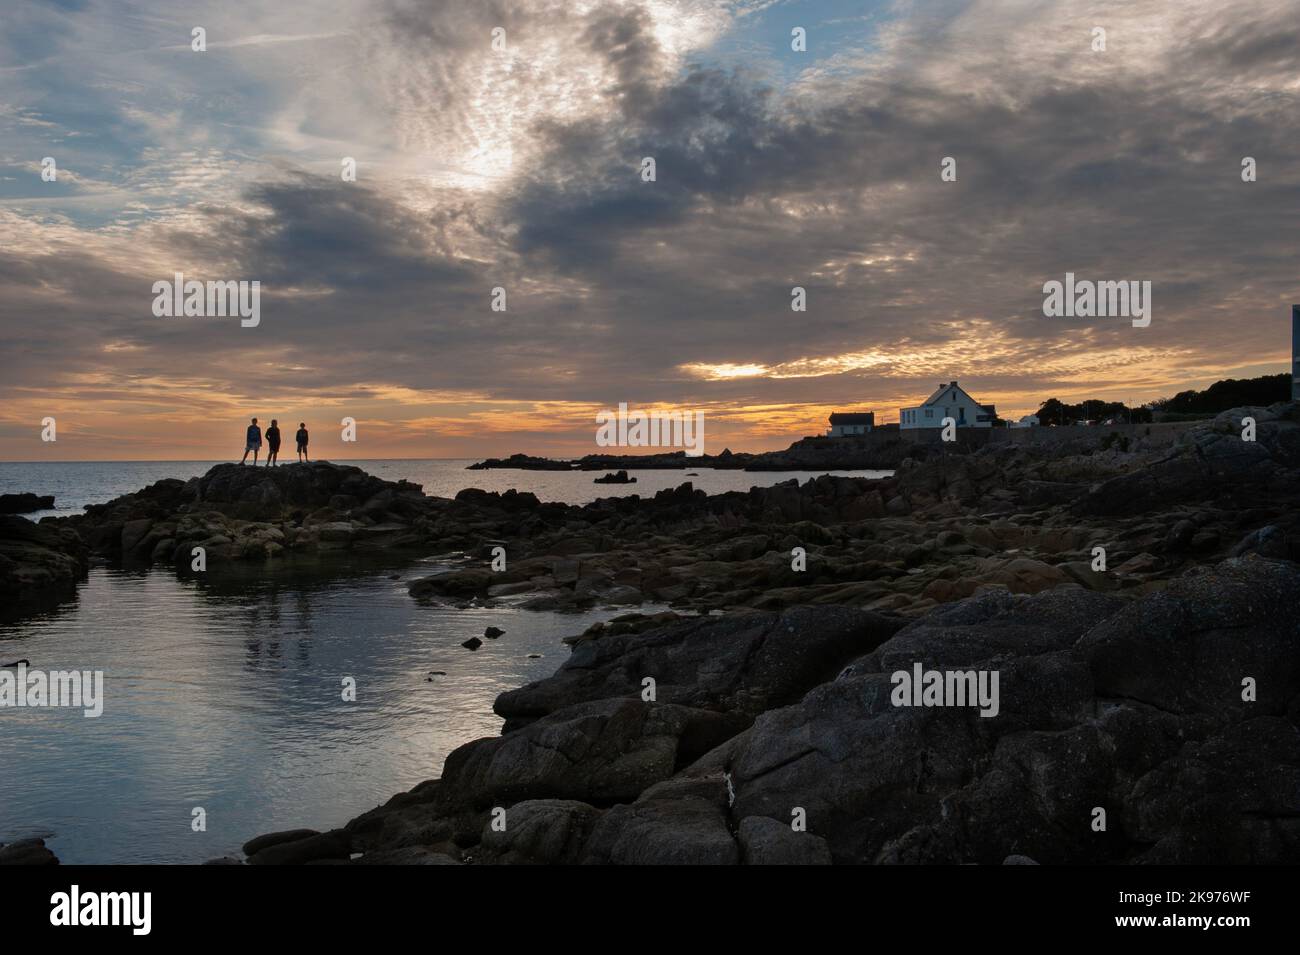 Familie, die auf Felsen steht, die vom Sonnenuntergang abgeschnitten und vor dem dramatischen Himmel und der französischen Küste geschildet werden Stockfoto